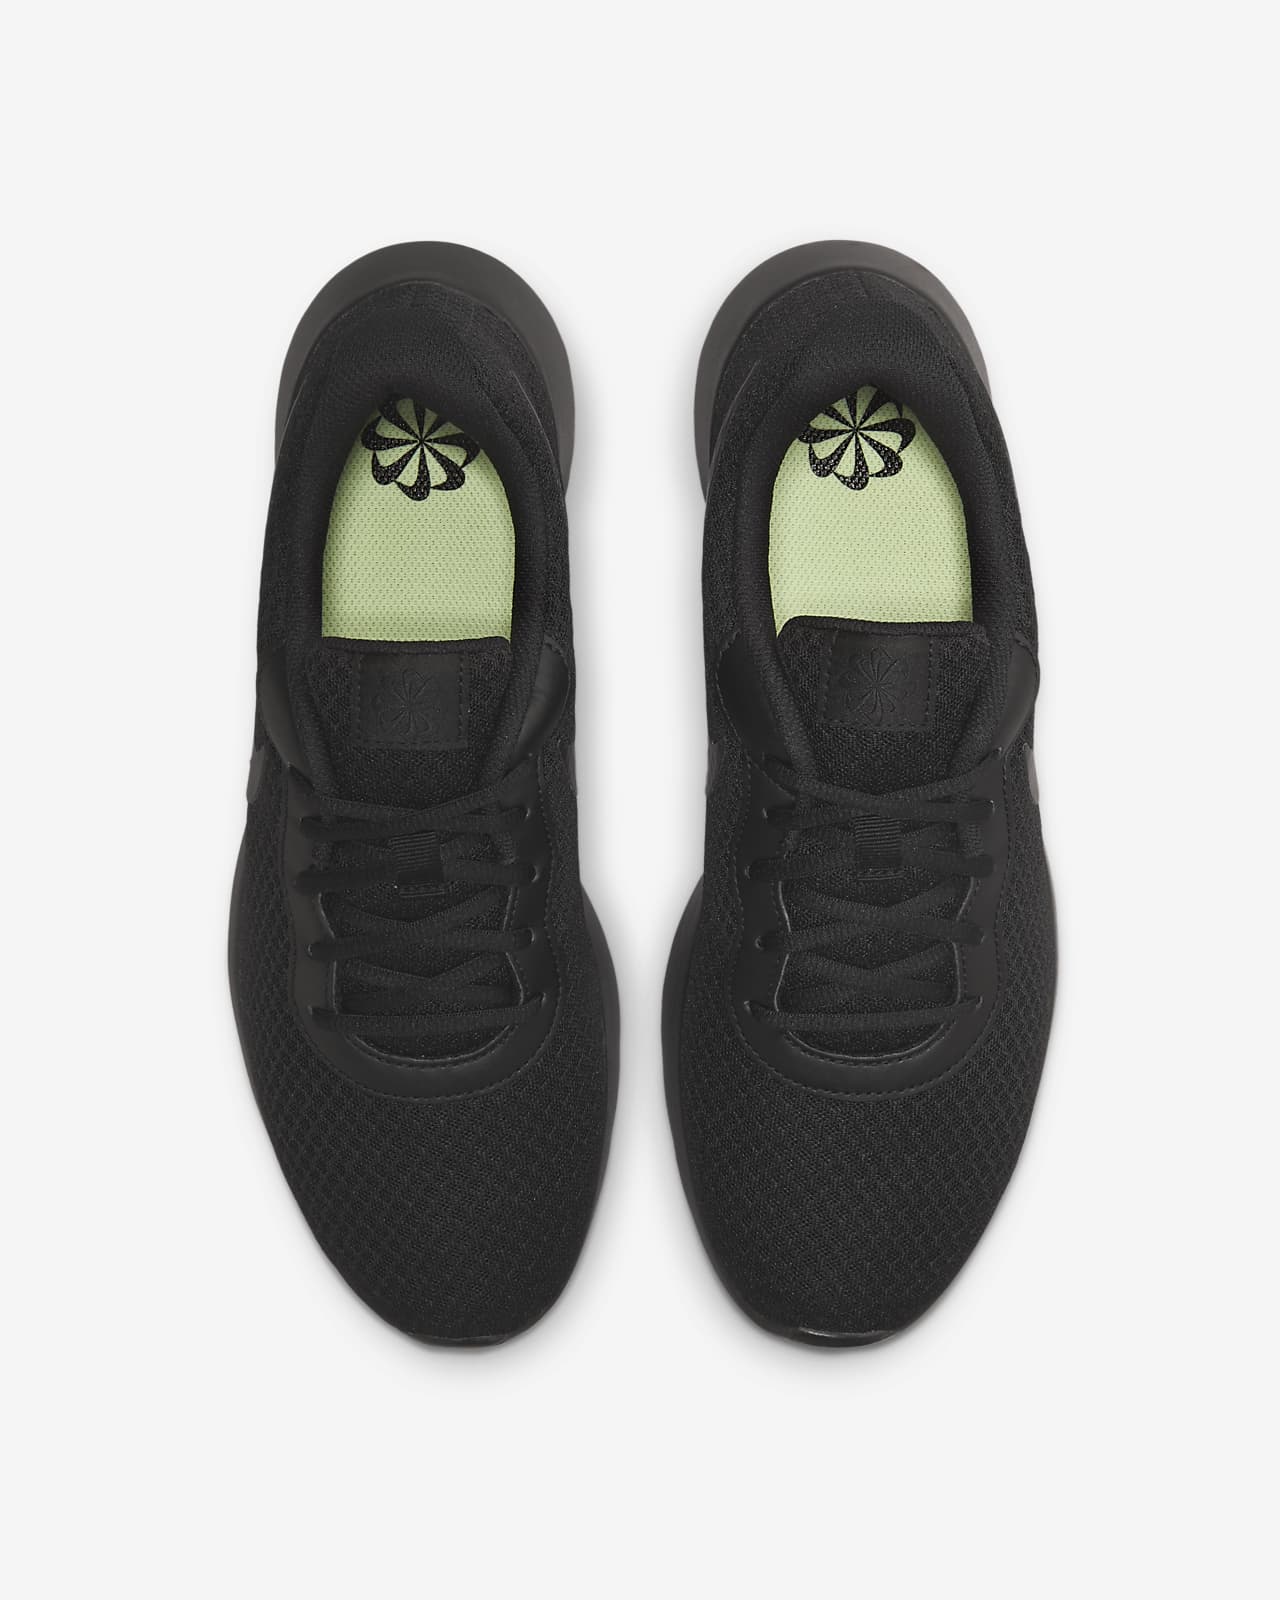 Tanjun Nike Men\'s Shoes.